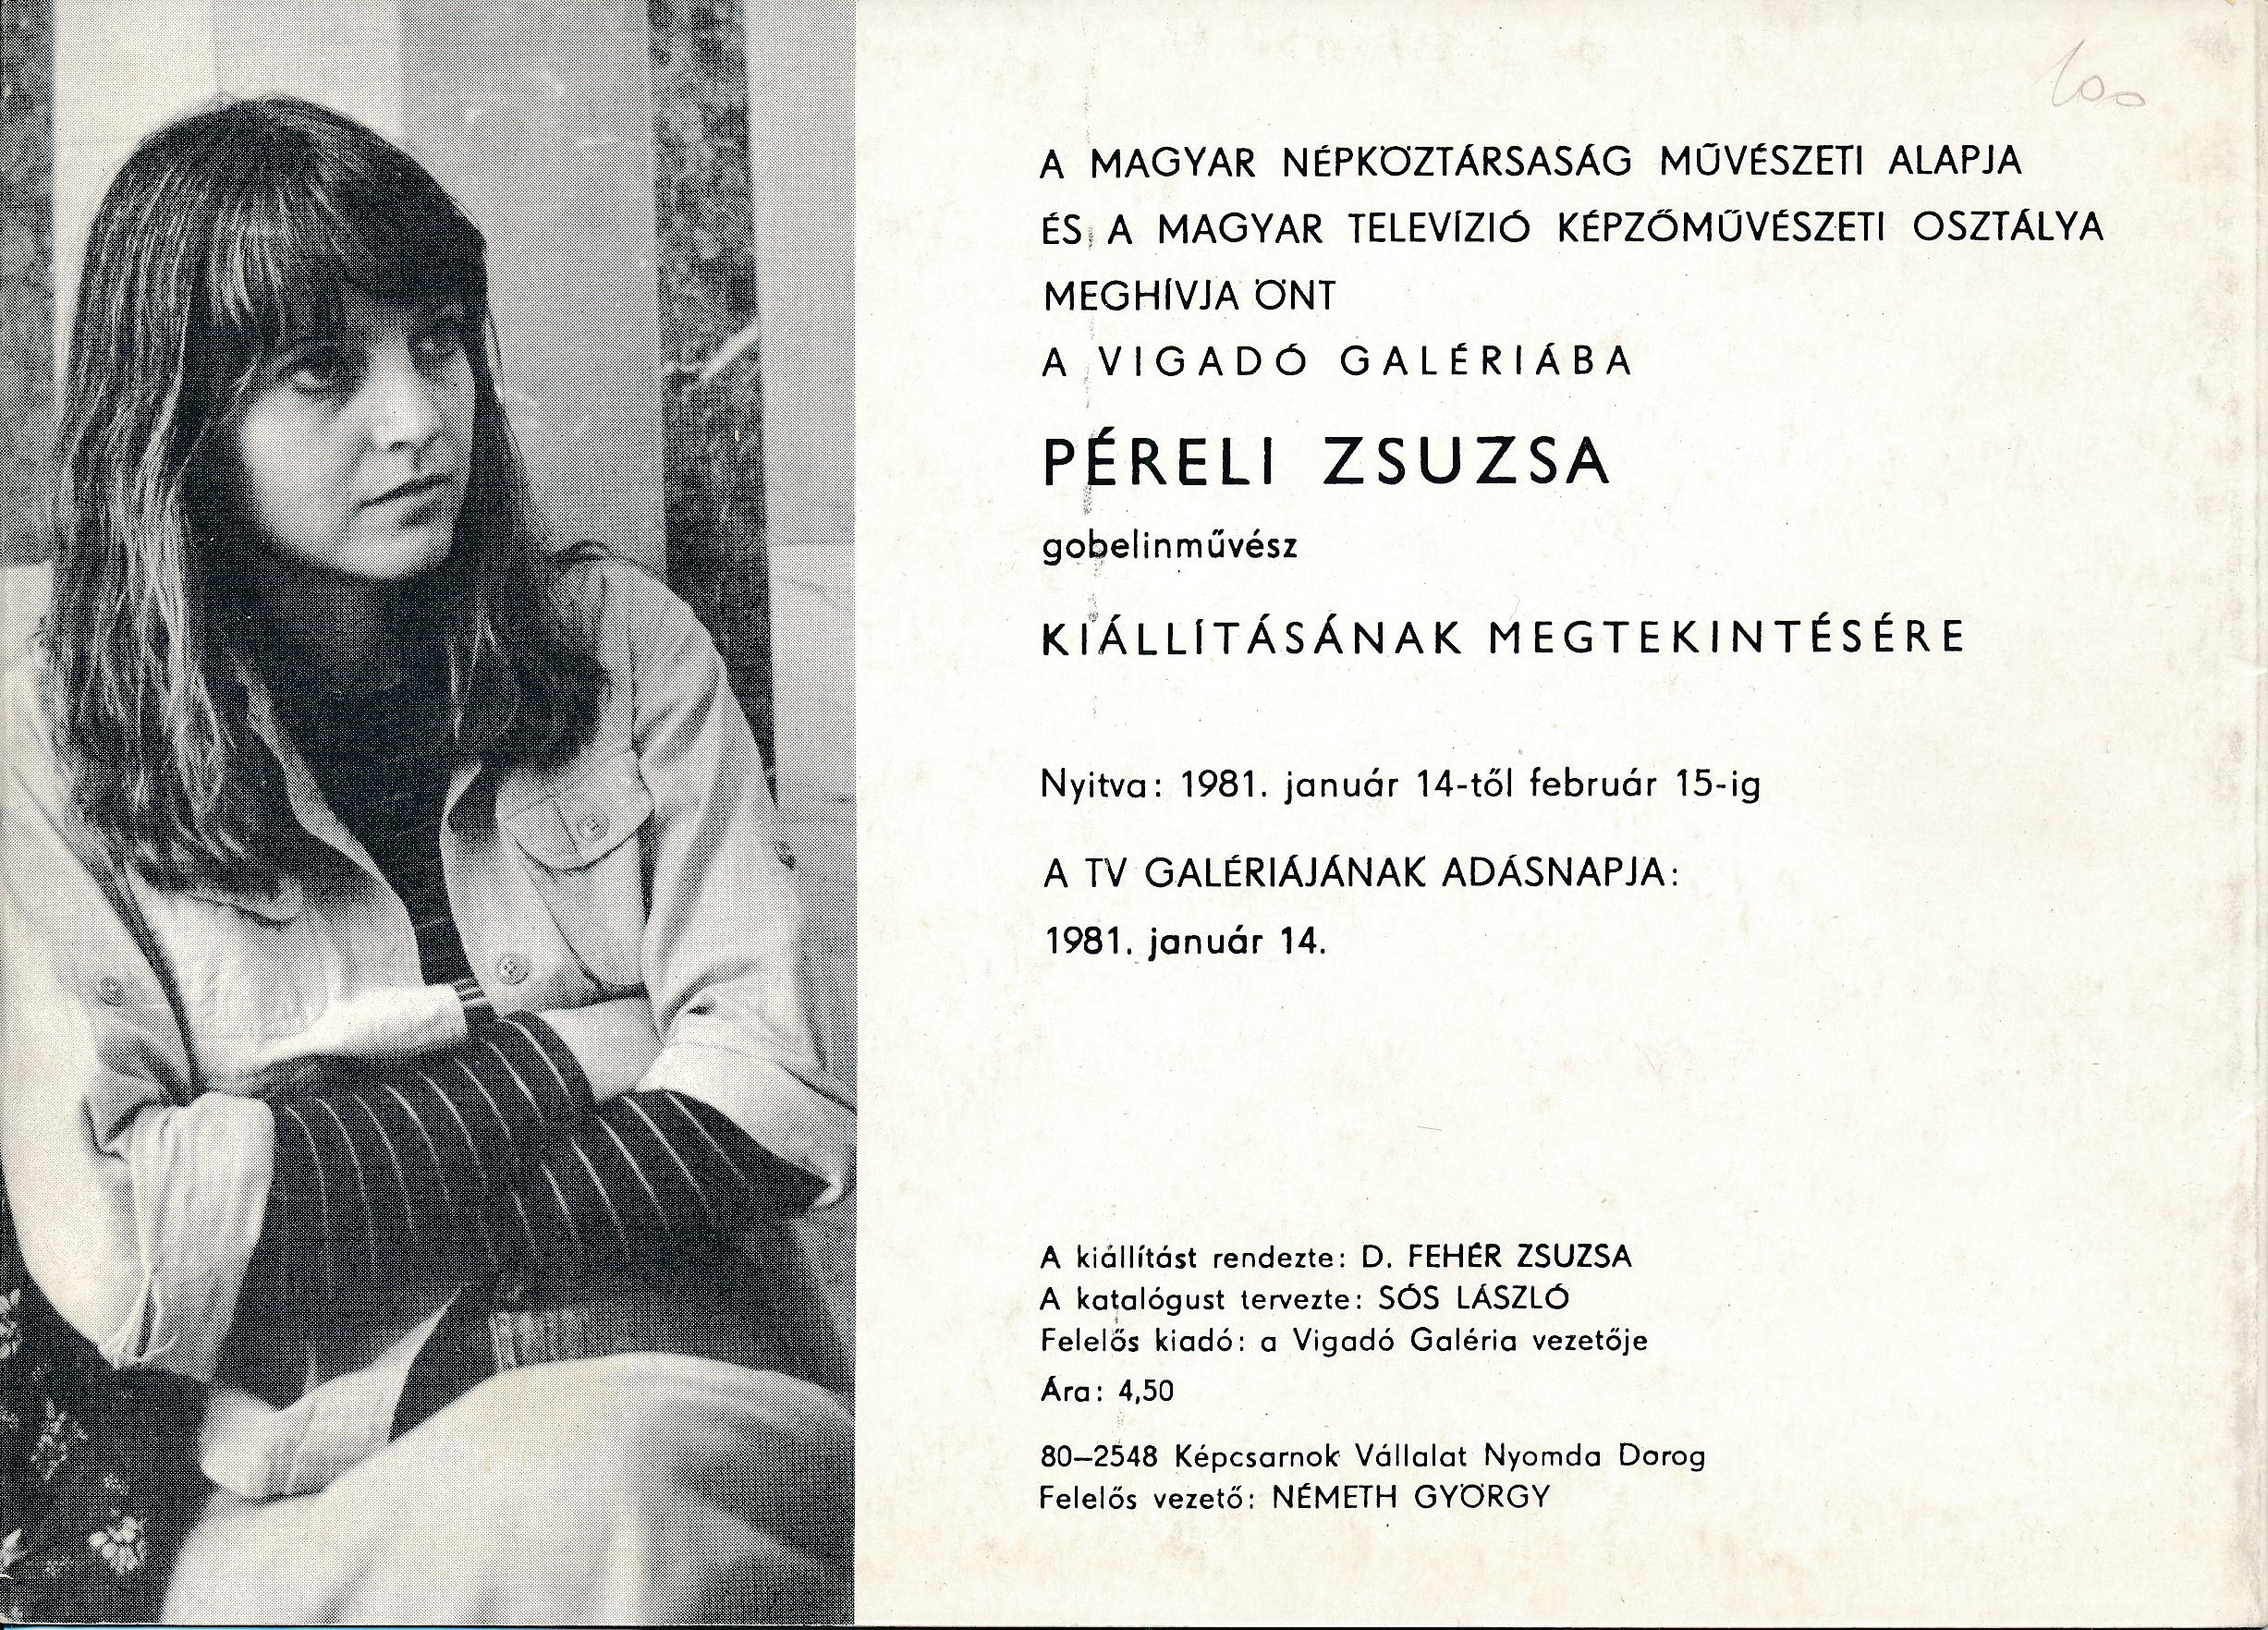 Péreli Zsuzsa gobelinművész kiállítása Vigadó Galéria 1981 (Design DigiTár – Iparművészeti archívum CC BY-NC-SA)